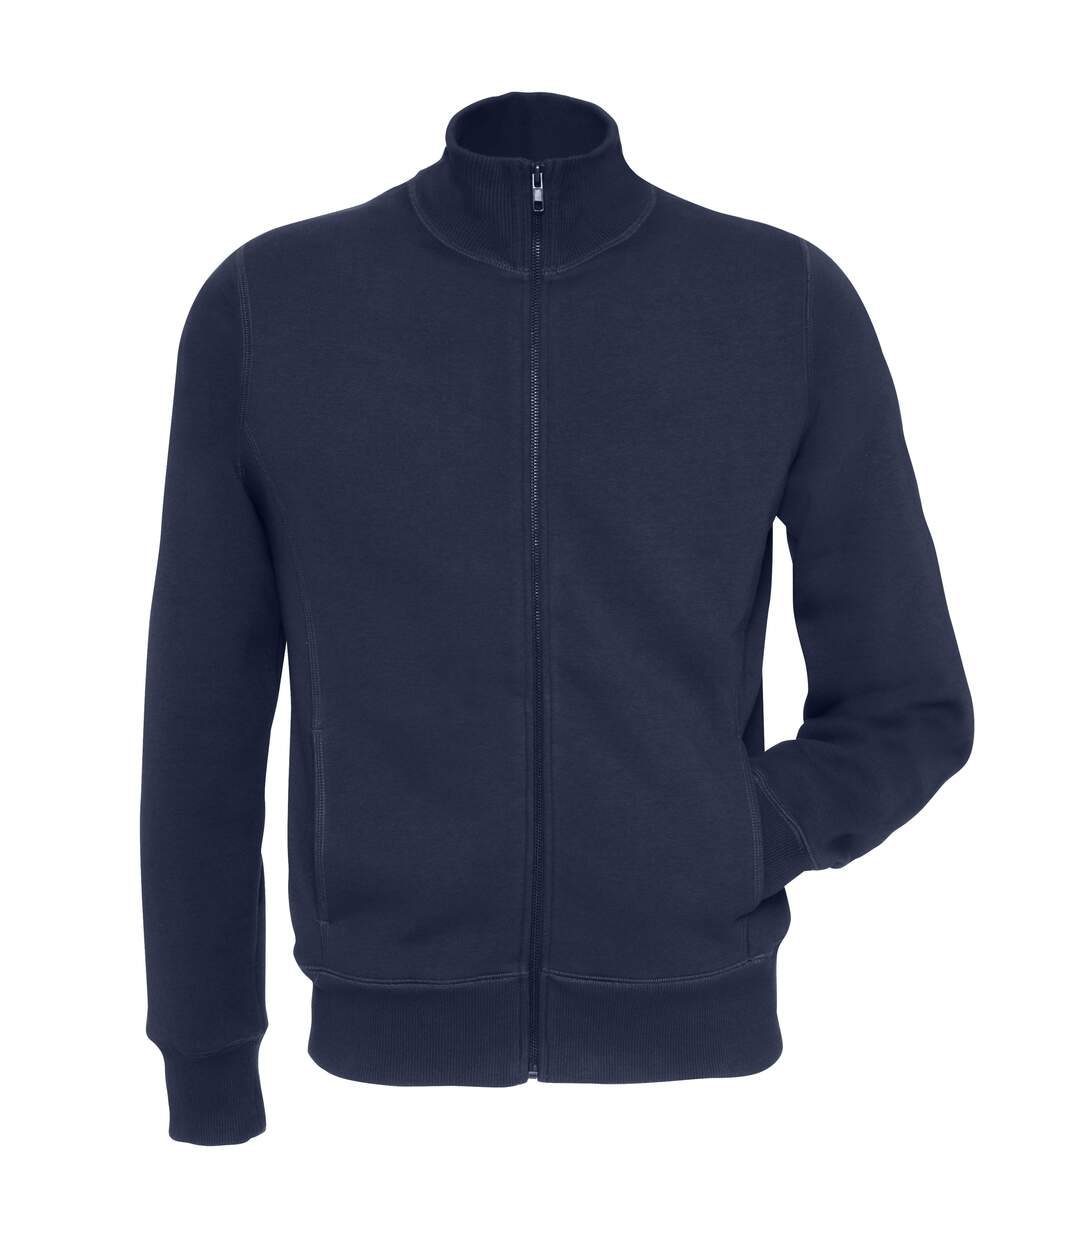 B&C Mens Spider Full Zipped Fleece Top/Sweatshirt (Navy)